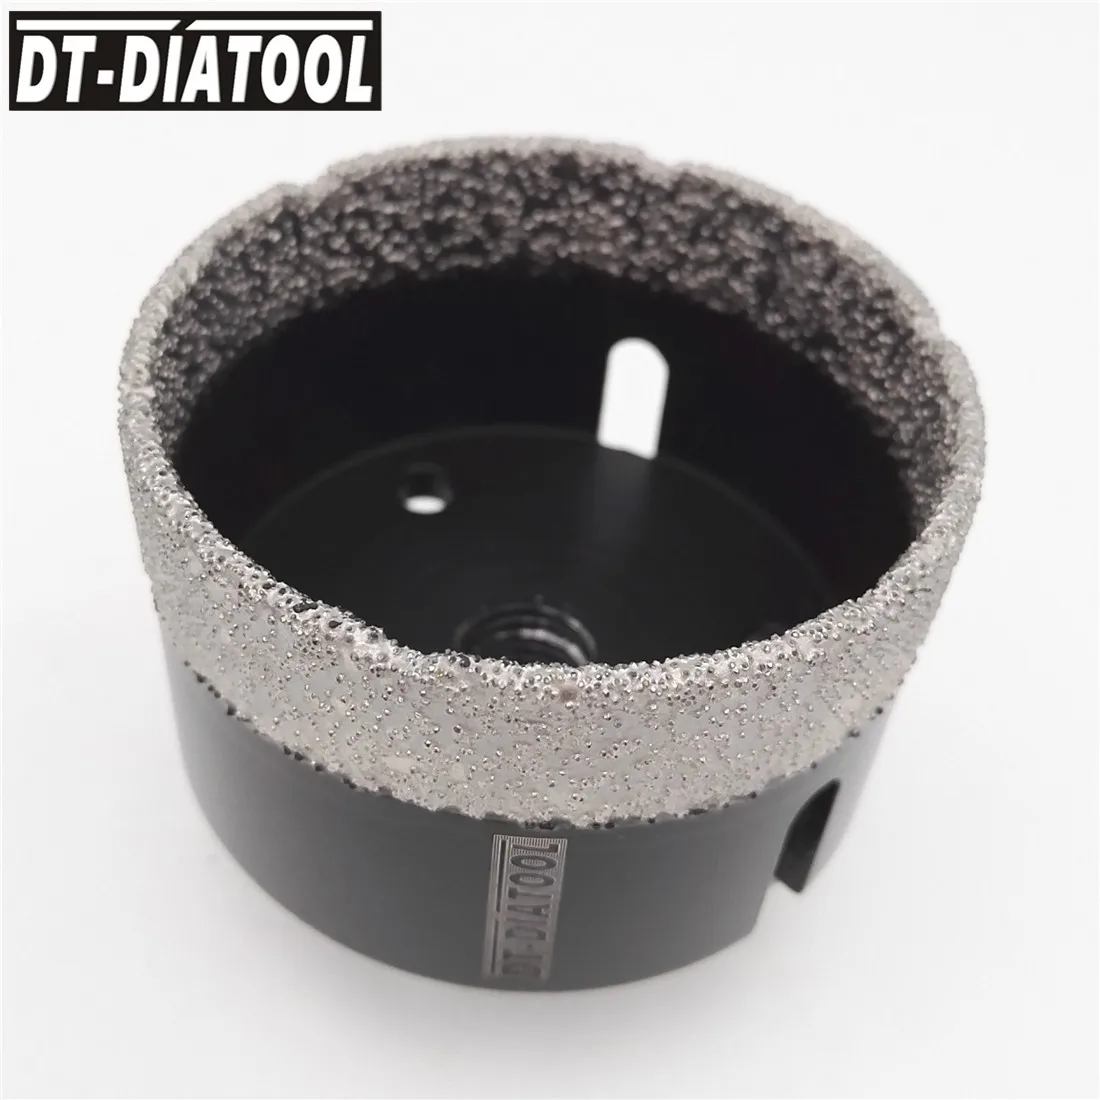 DT-DIATOOL 1 шт. M14 диаметр 68 мм сухой вакуумной пайки алмазного бурения коронка керамическая плитка отверстие пила гранит мрамор сверло каменное